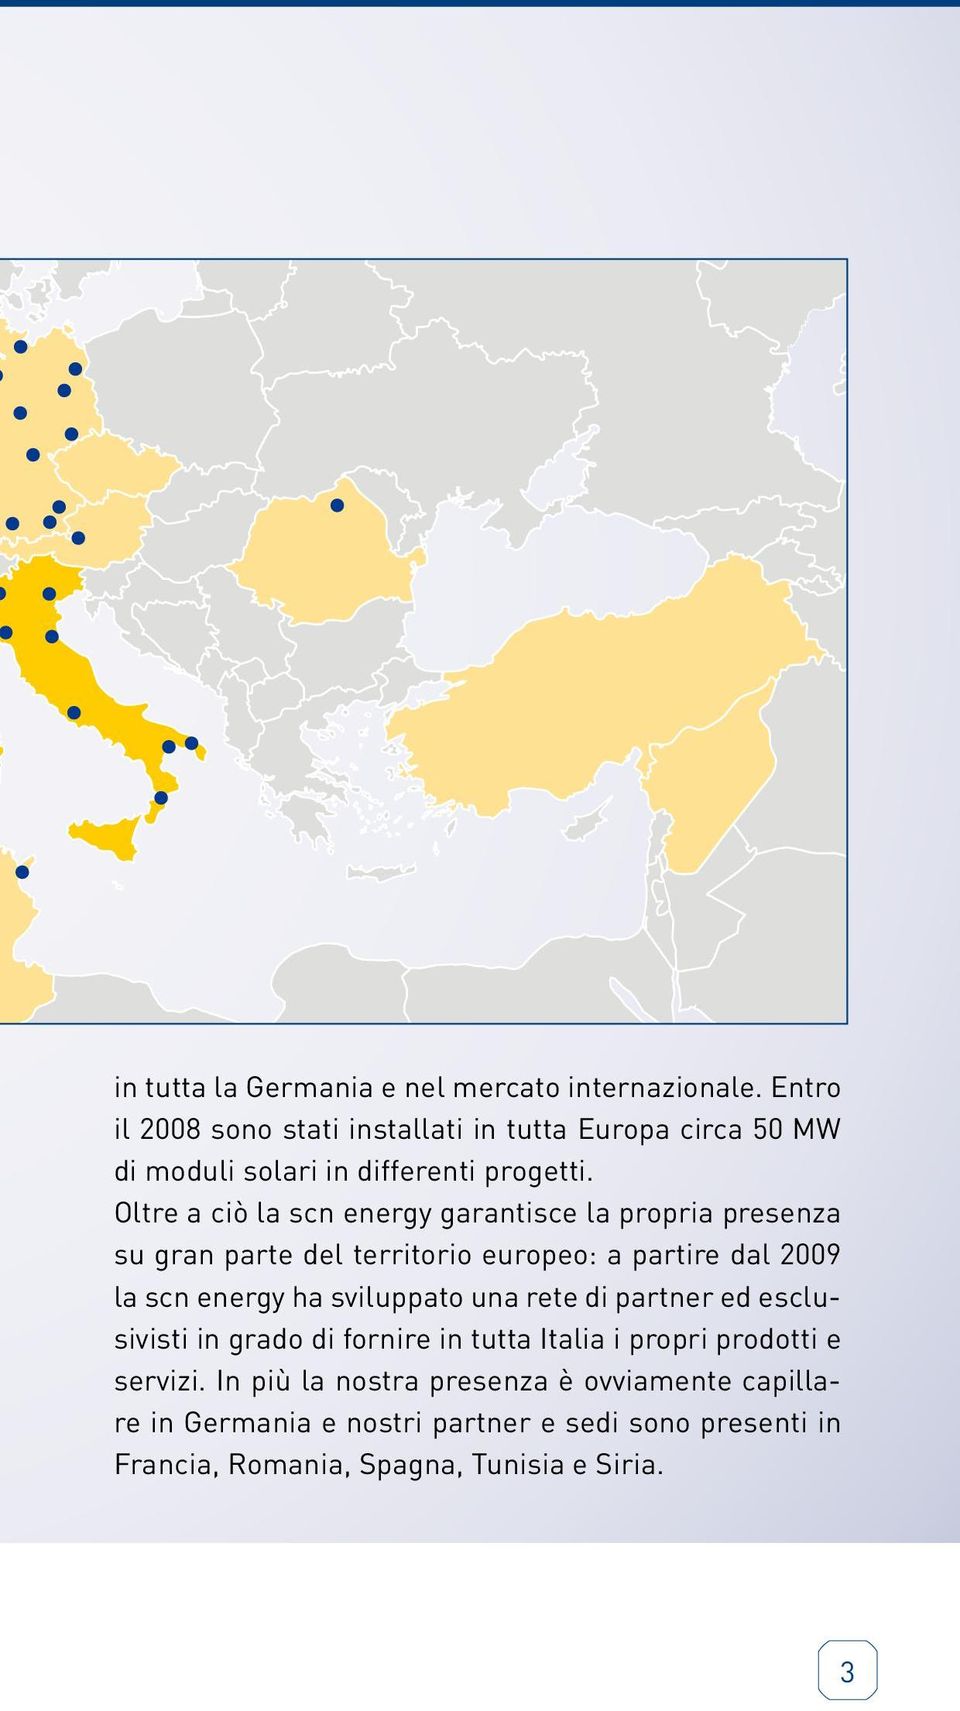 Oltre a ciò la scn energy garantisce la propria presenza su gran parte del territorio europeo: a partire dal 2009 la scn energy ha